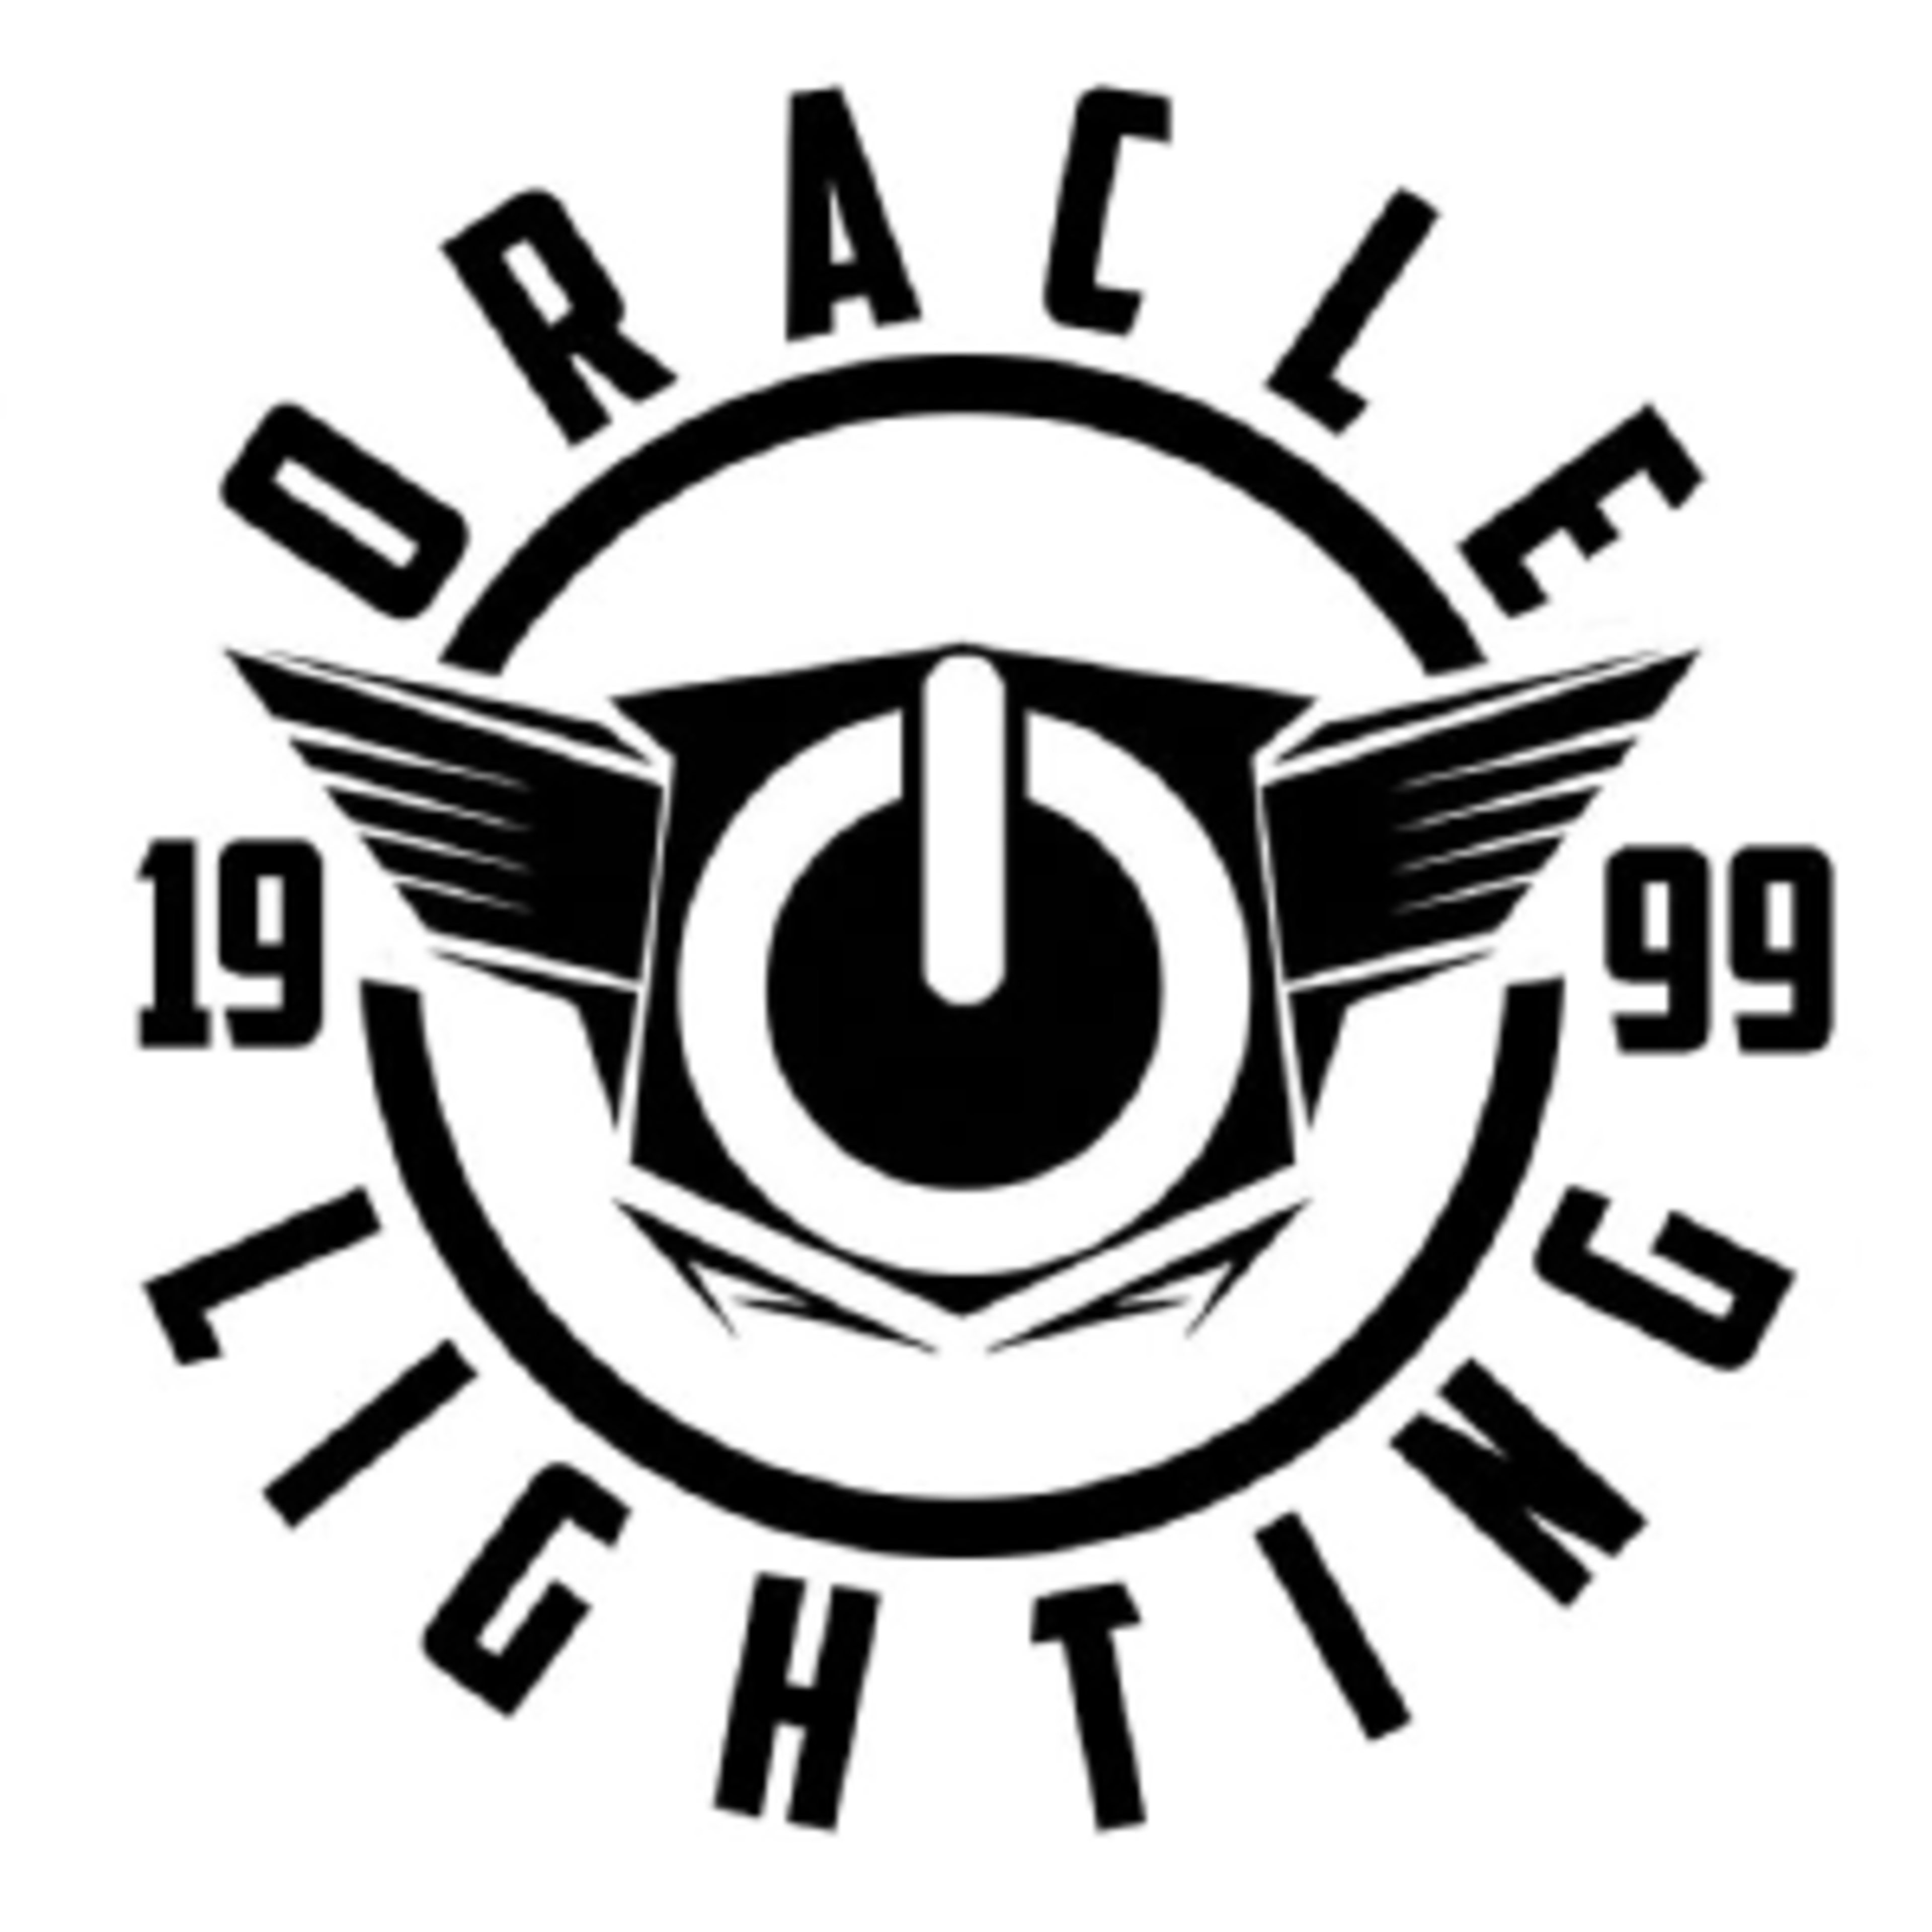 Oracle LightingCode